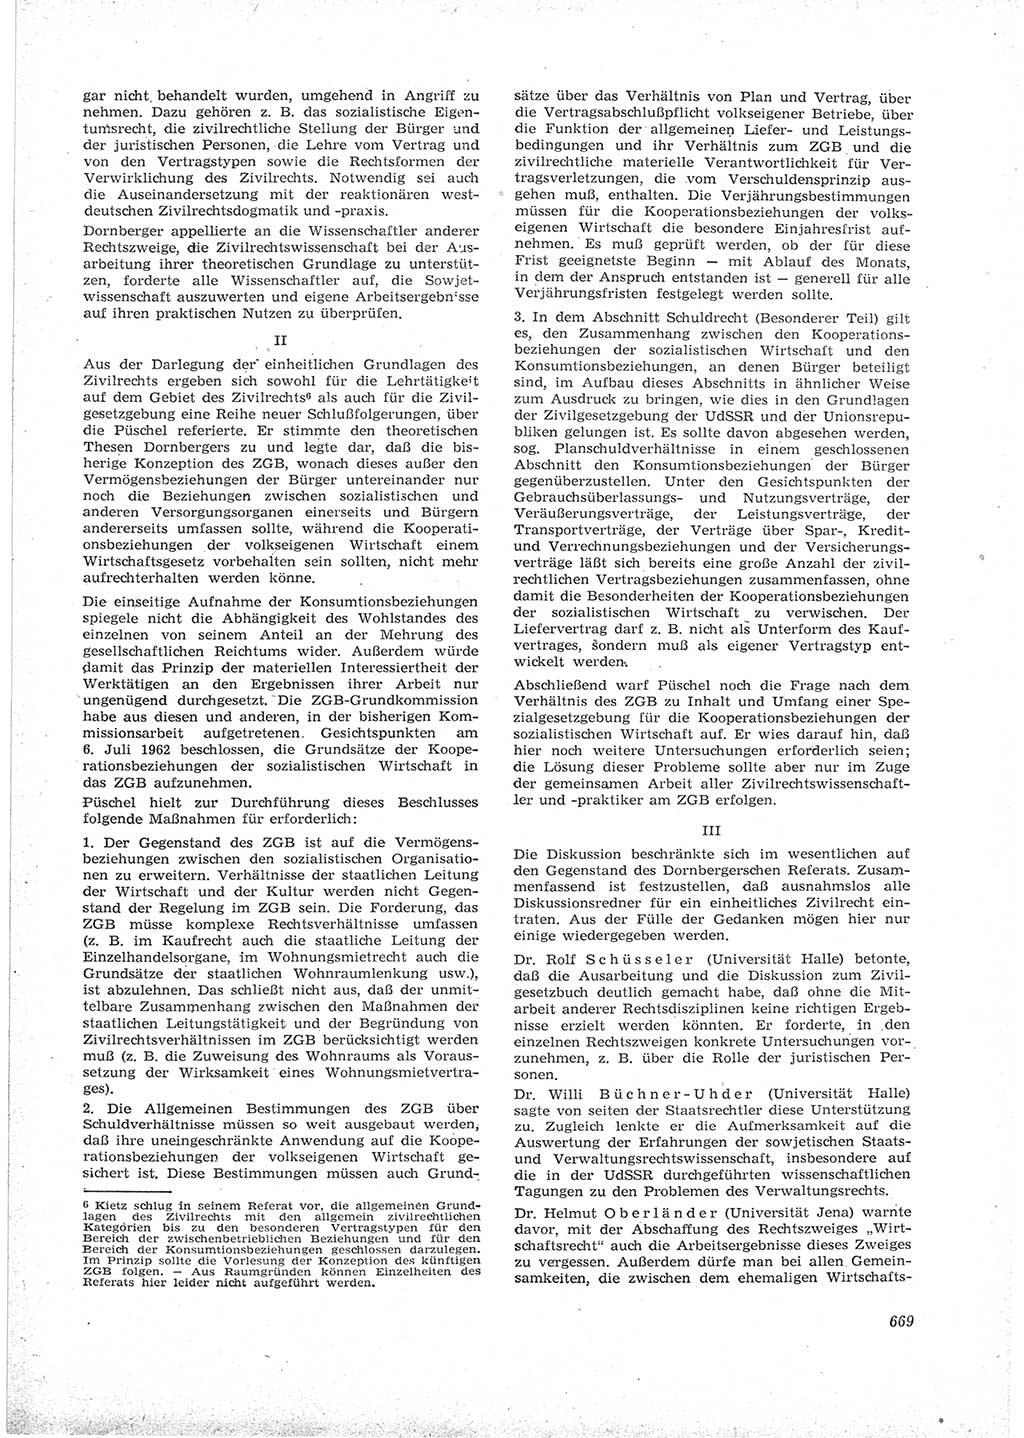 Neue Justiz (NJ), Zeitschrift für Recht und Rechtswissenschaft [Deutsche Demokratische Republik (DDR)], 16. Jahrgang 1962, Seite 669 (NJ DDR 1962, S. 669)